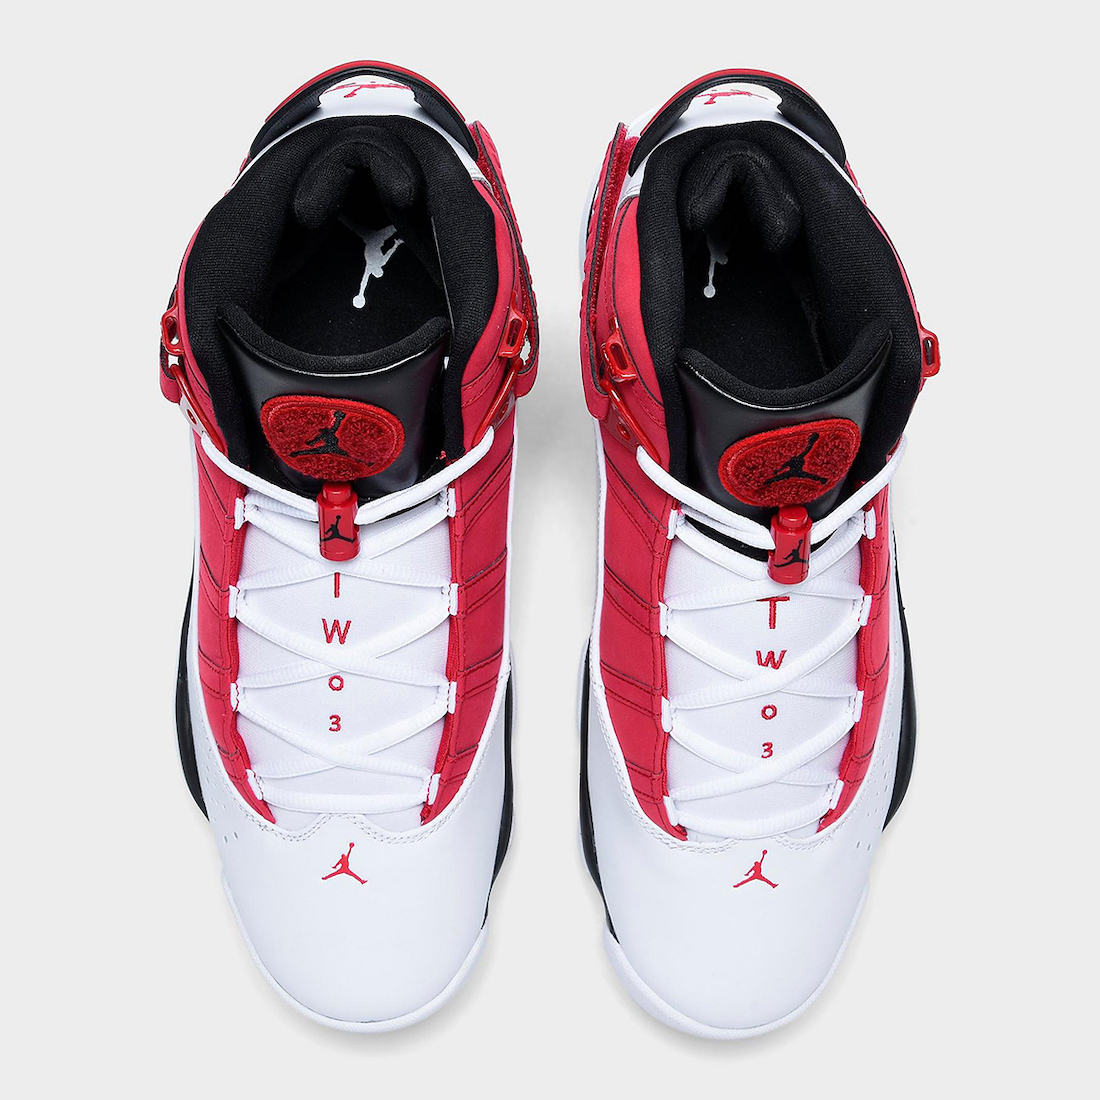 Jordan 6 Rings White Black Red 322992-106 Release Date Info